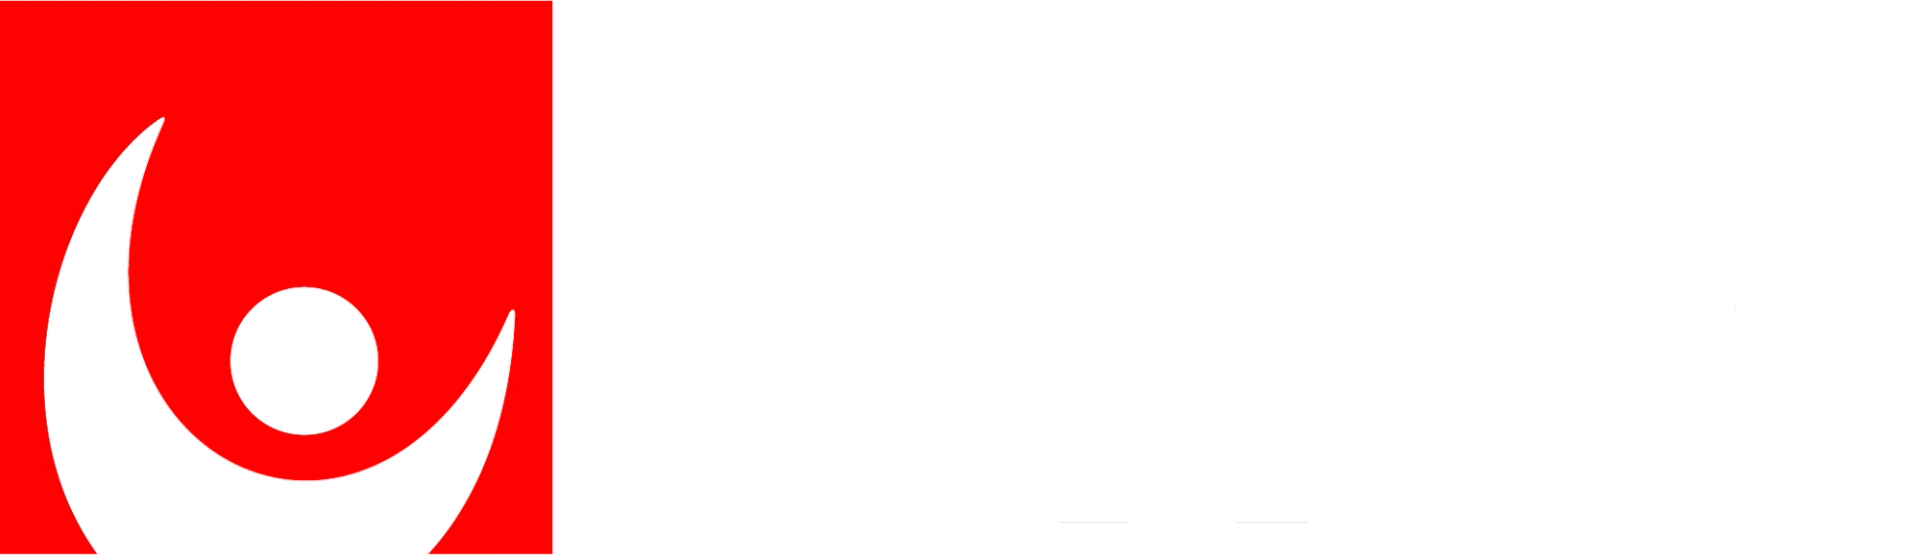 Svenska spel, logotyp